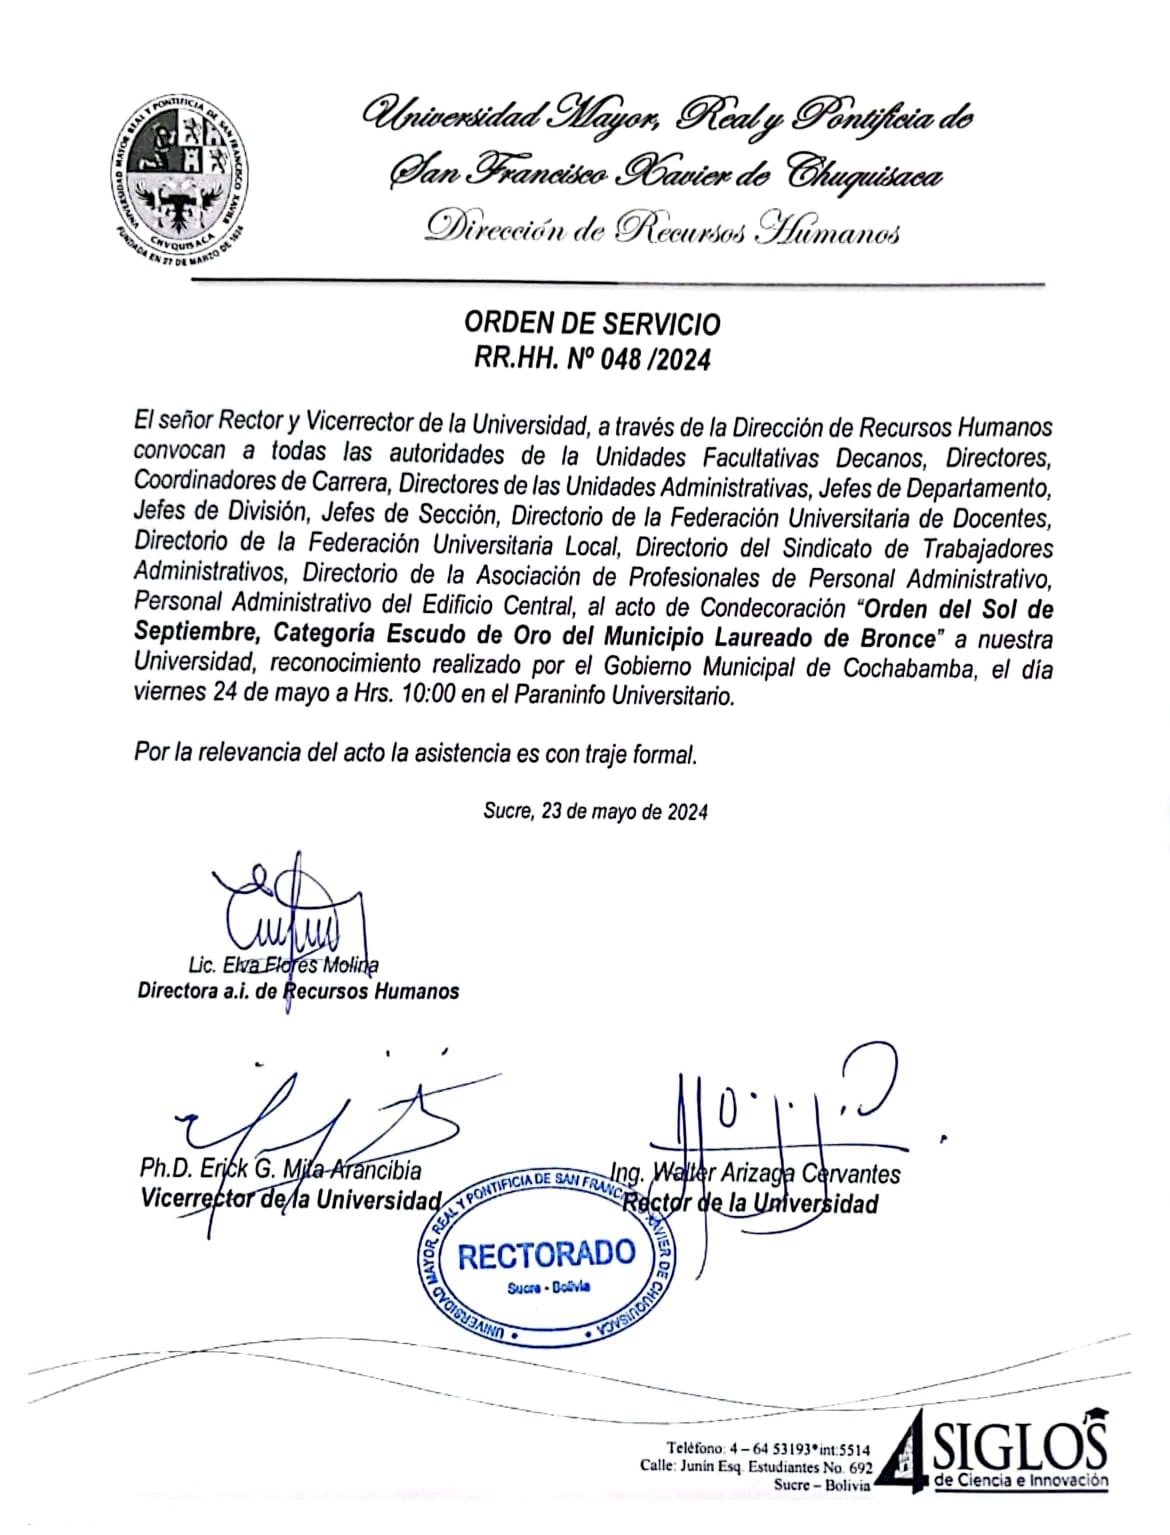 ORDEN DE SERVICIO RR.HH. Nº 048/2024, CONDECORACIÓN GOBIERNO MUNICIPAL DE COCHABAMBA.